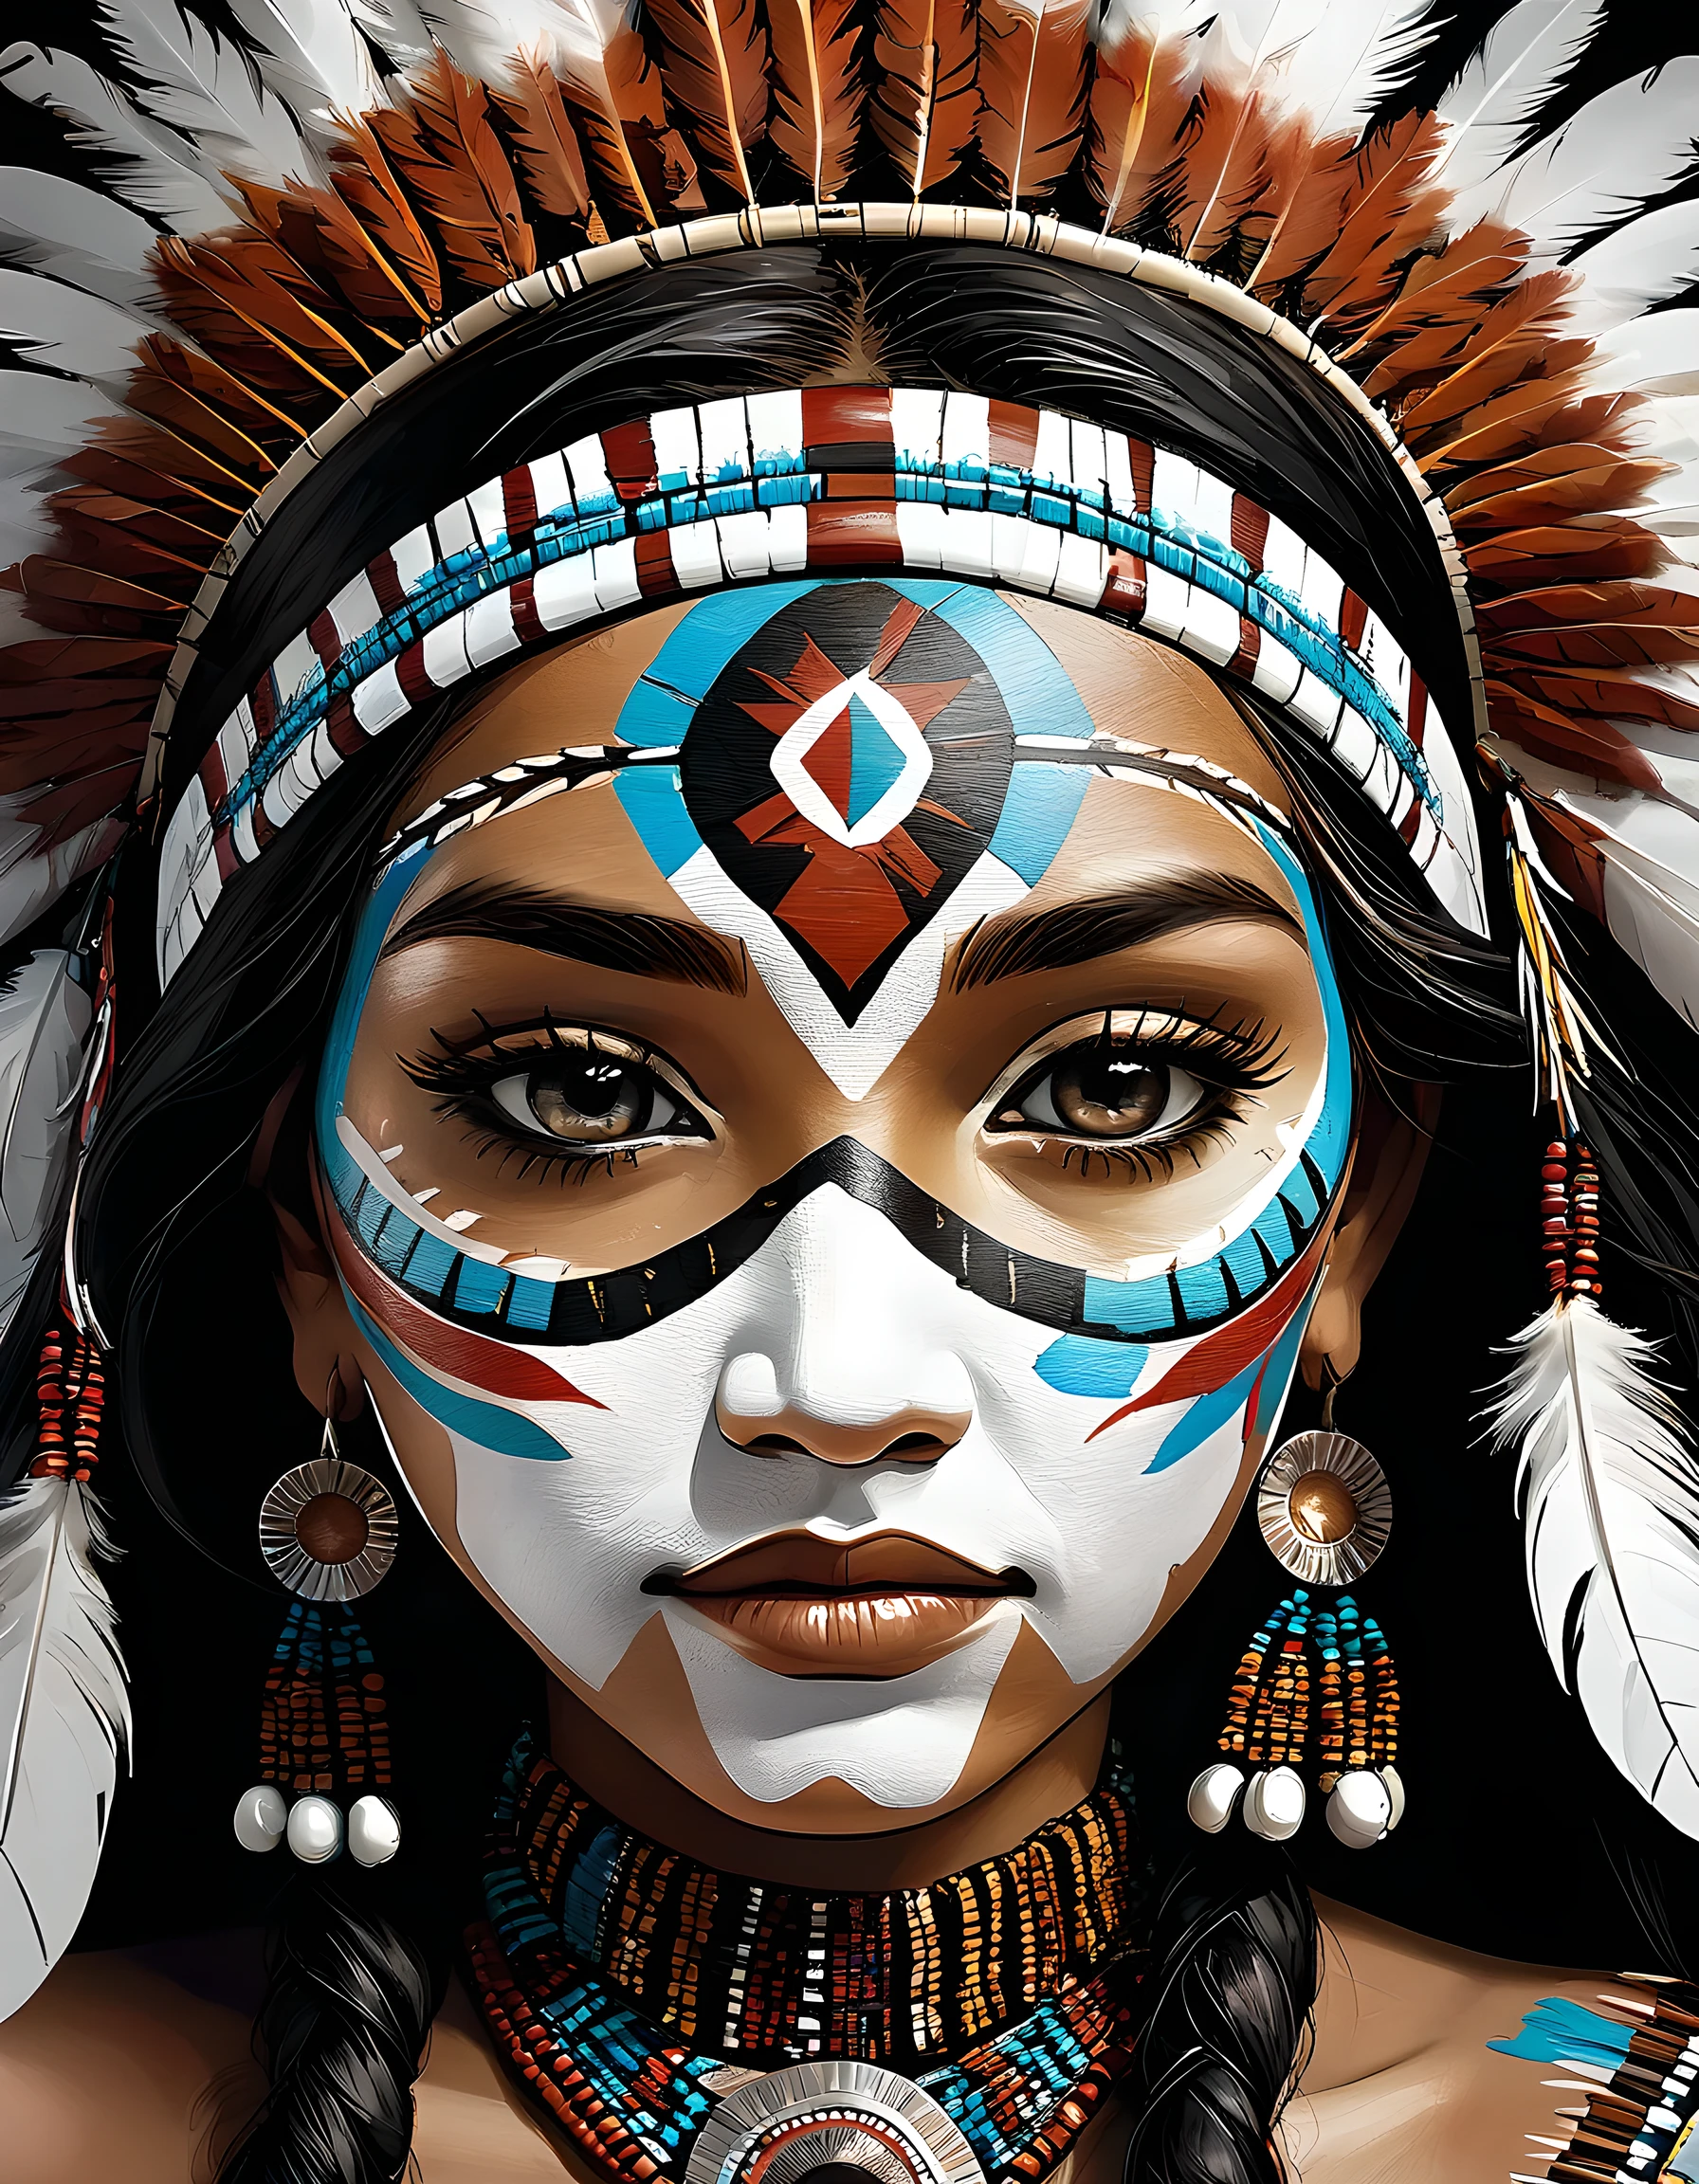 лицо крупным планом, подробные женские лица., коренной американец, первые нации, абориген, украшения и аксессуары из перьев птиц, детальная роспись лица